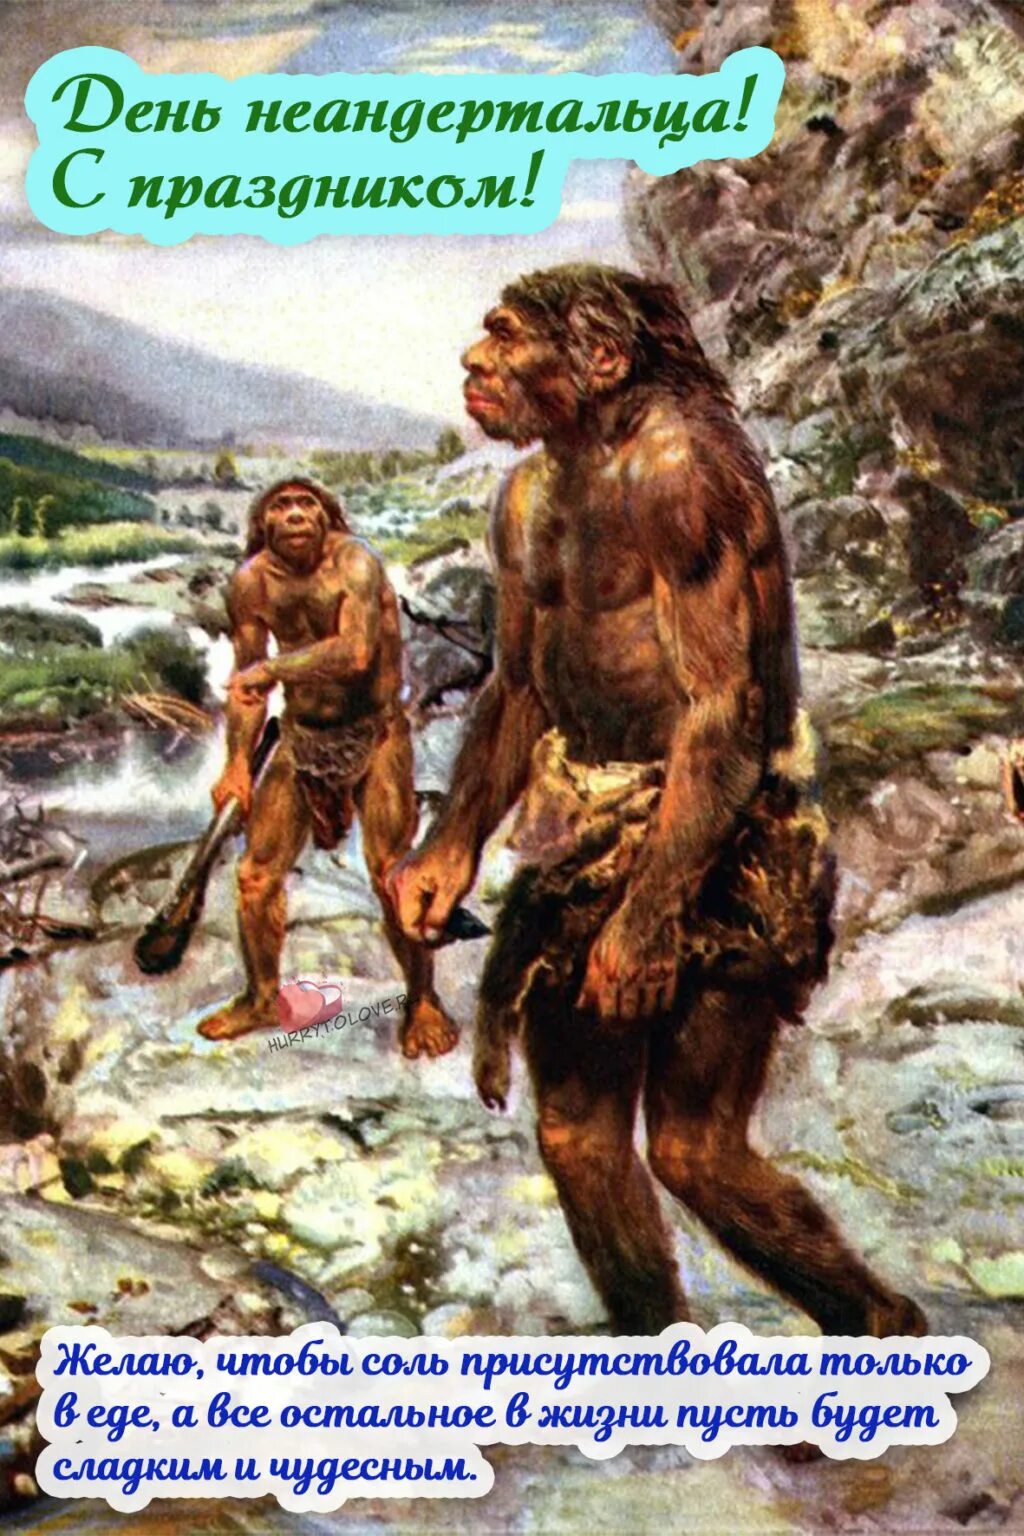 Мужчины в древние времена. Палеоантропы или древние люди неандертальцы. Древние люди - Палеоантропы, неандертальцы. Древние люди Палеоантропы рост.